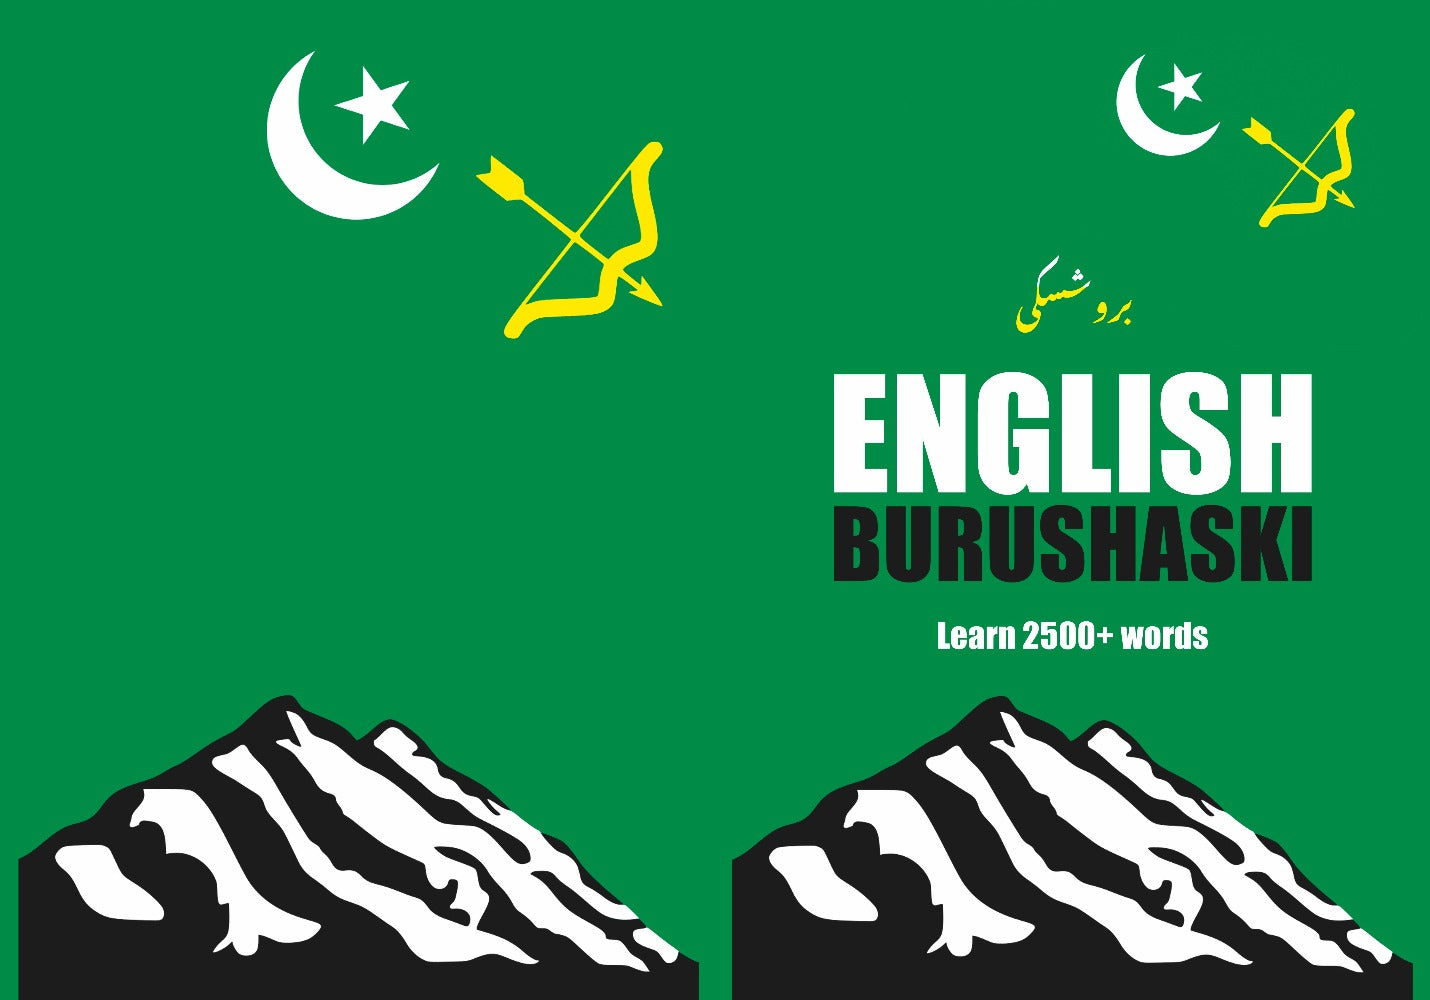 Burushaski language learning notebook cover